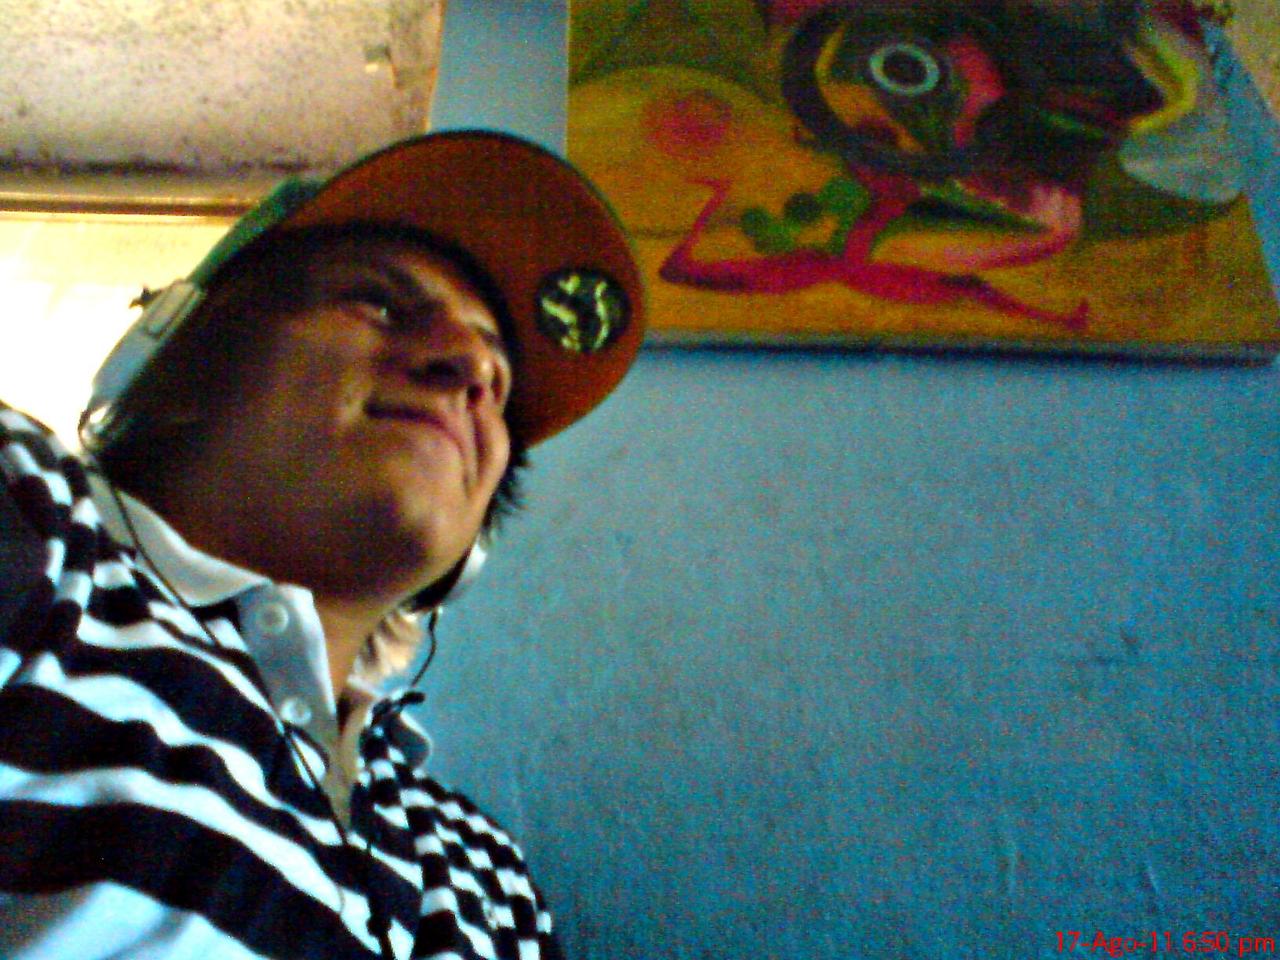 En el estudio #Soder #Graffiti #2EK #StreetArt
#GomezPalacioDurango #HipHop #MtnColors #RAP #HIPHOP http://t.co/f7EOO53XAJ